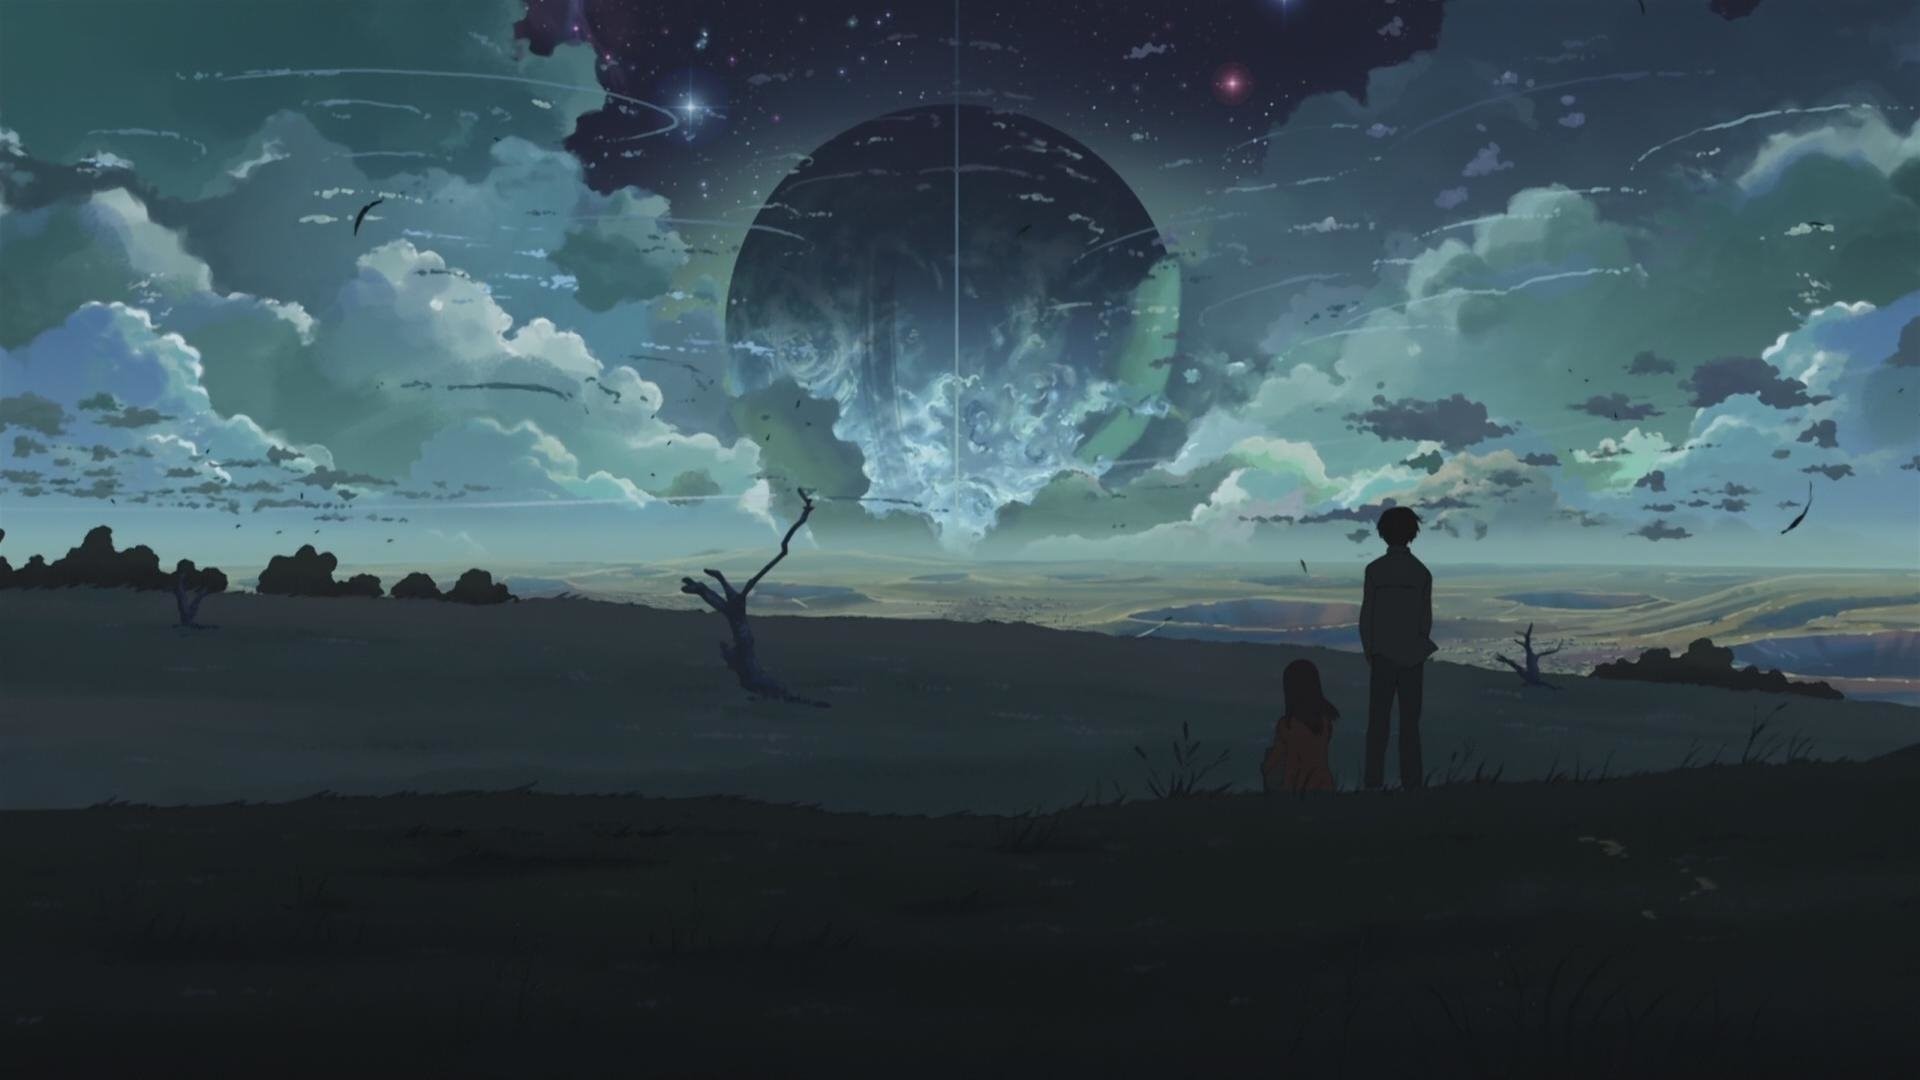 fond d'écran makoto,ciel,atmosphère,illustration,espace,oeuvre de cg